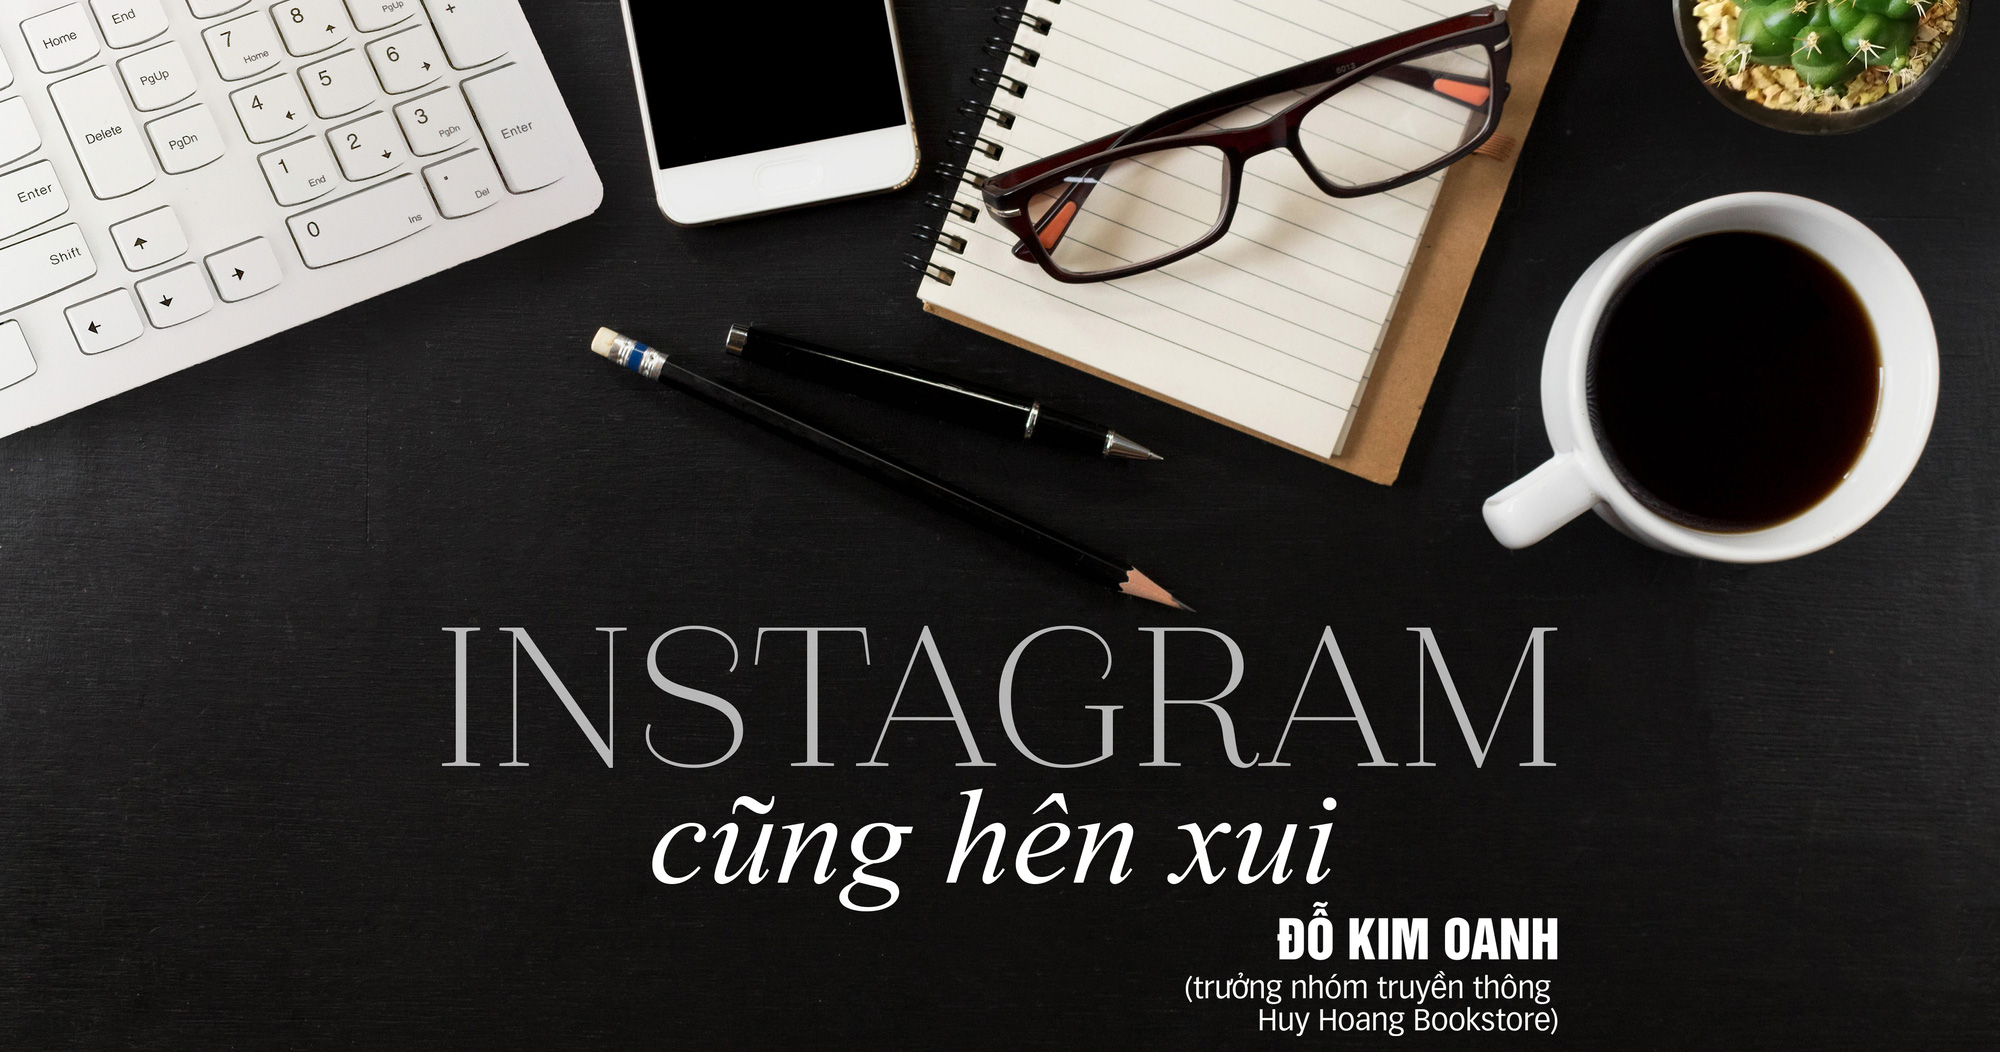 Bán sách thời mạng xã hội: Trên thông Instagram, dưới tường TikTok - Ảnh 10.